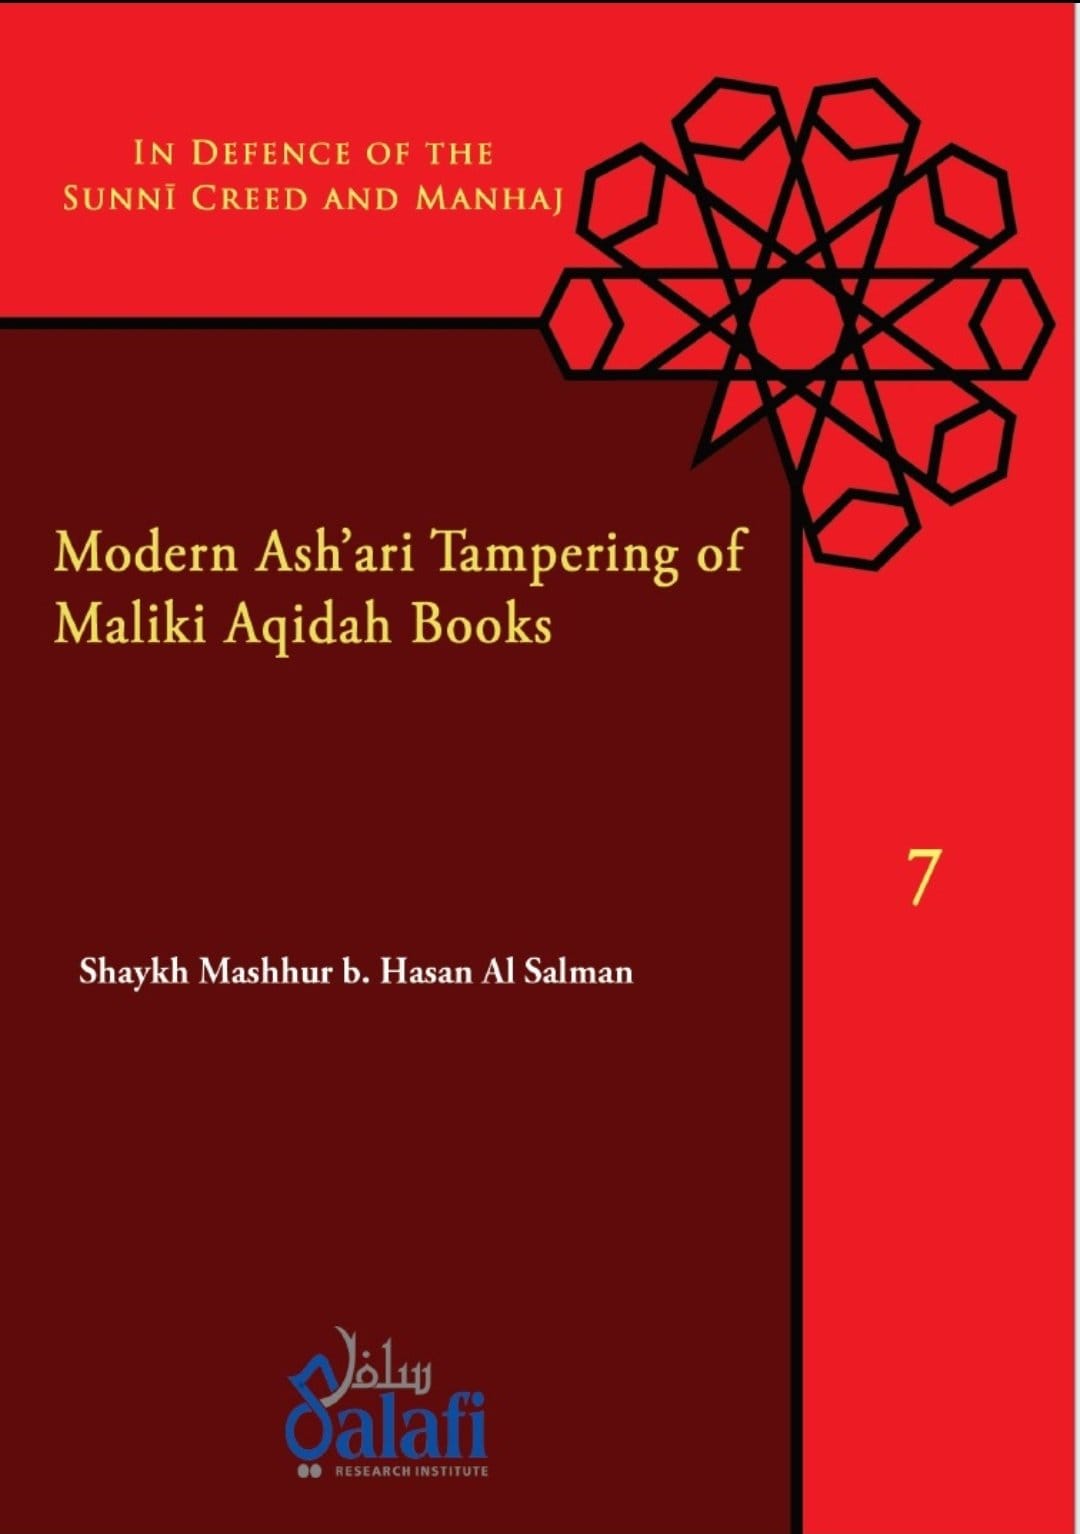 Image of Modern Ash'ari Tampering of Maliki Aqidah Books - Shaykh Mashhur b. Hasan Al Salman